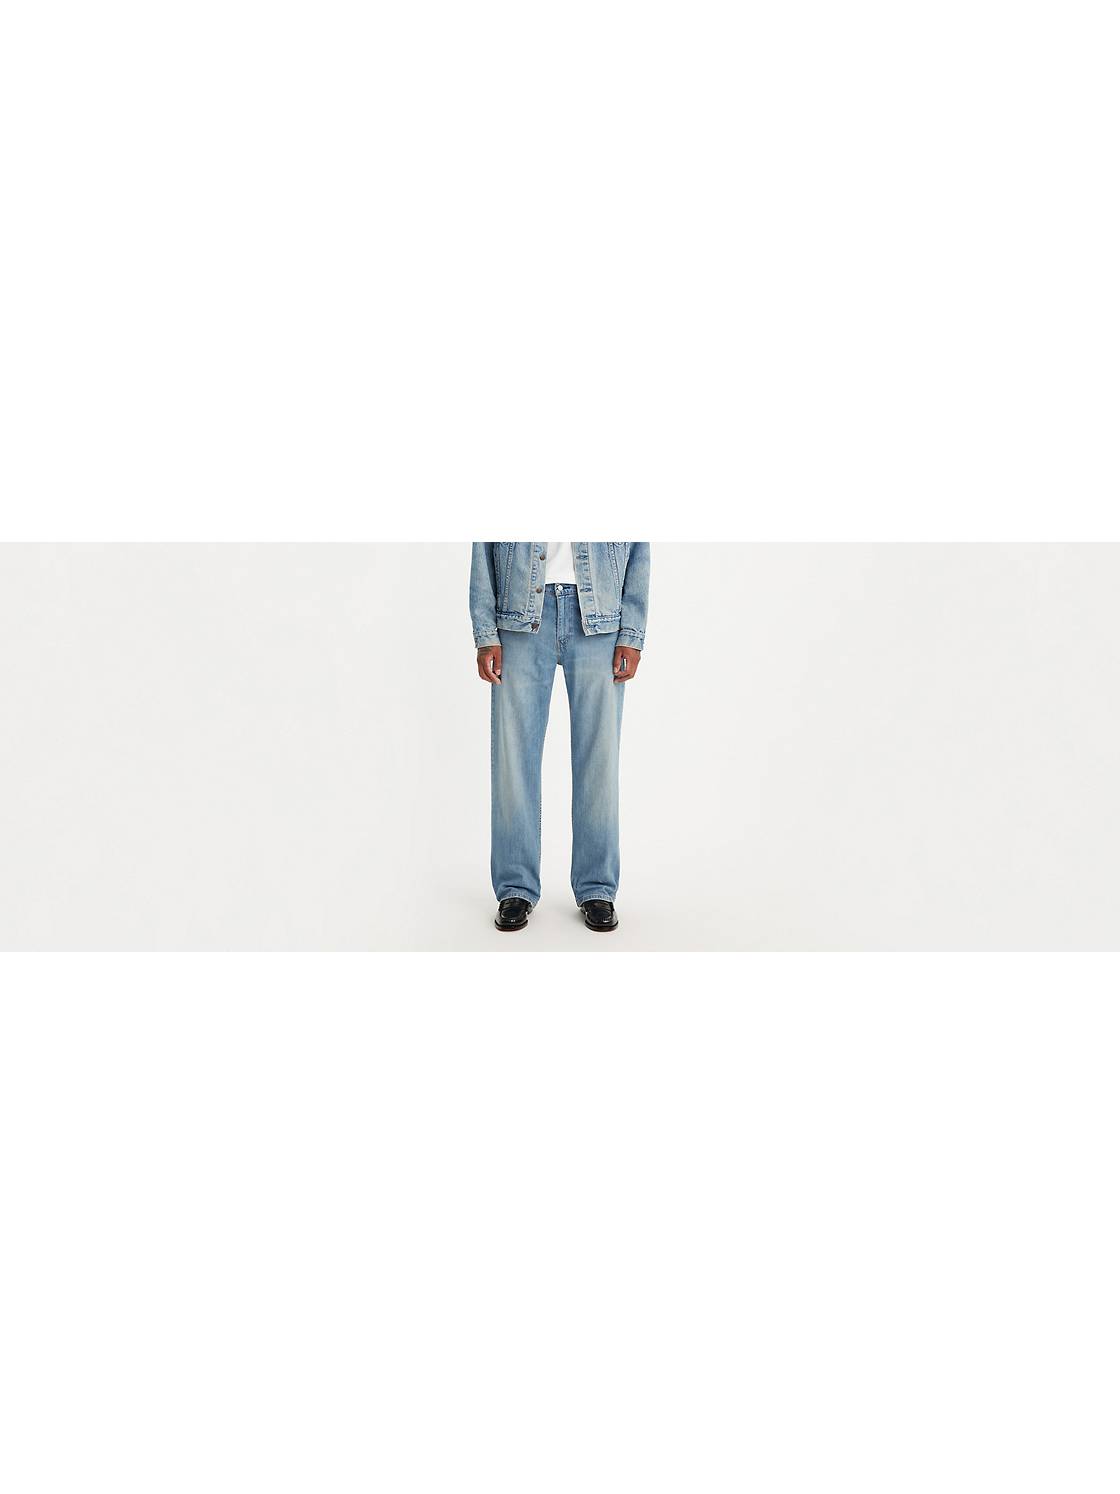 Men's Baggy Jeans: Shop Men's Loose Fit Jeans   Levi's® US